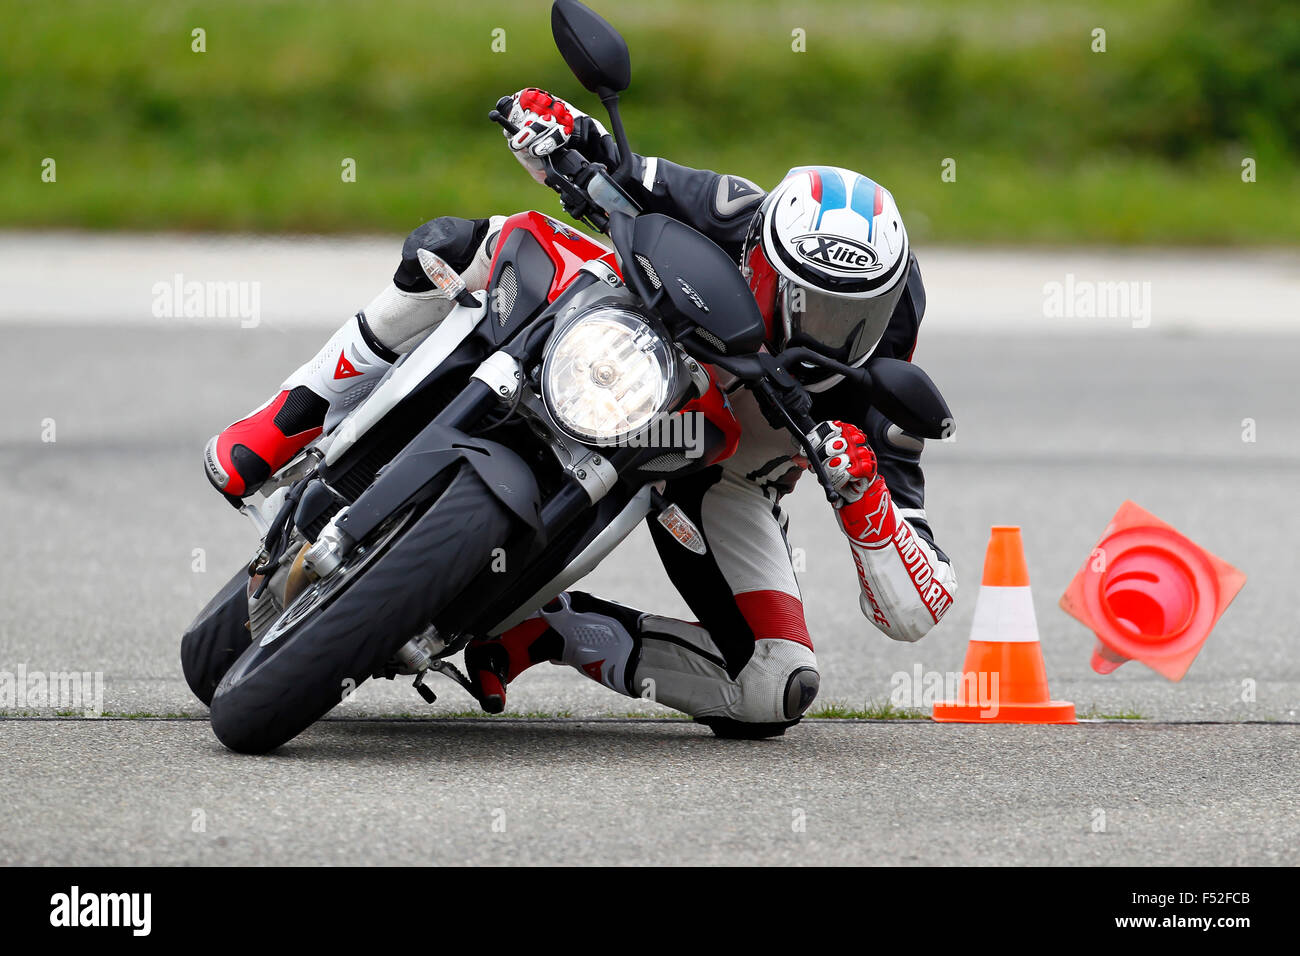 Motociclo, MV Agusta Brutale 675 tripistoni, Proving Ground, curva intorno a tralicci, Foto Stock